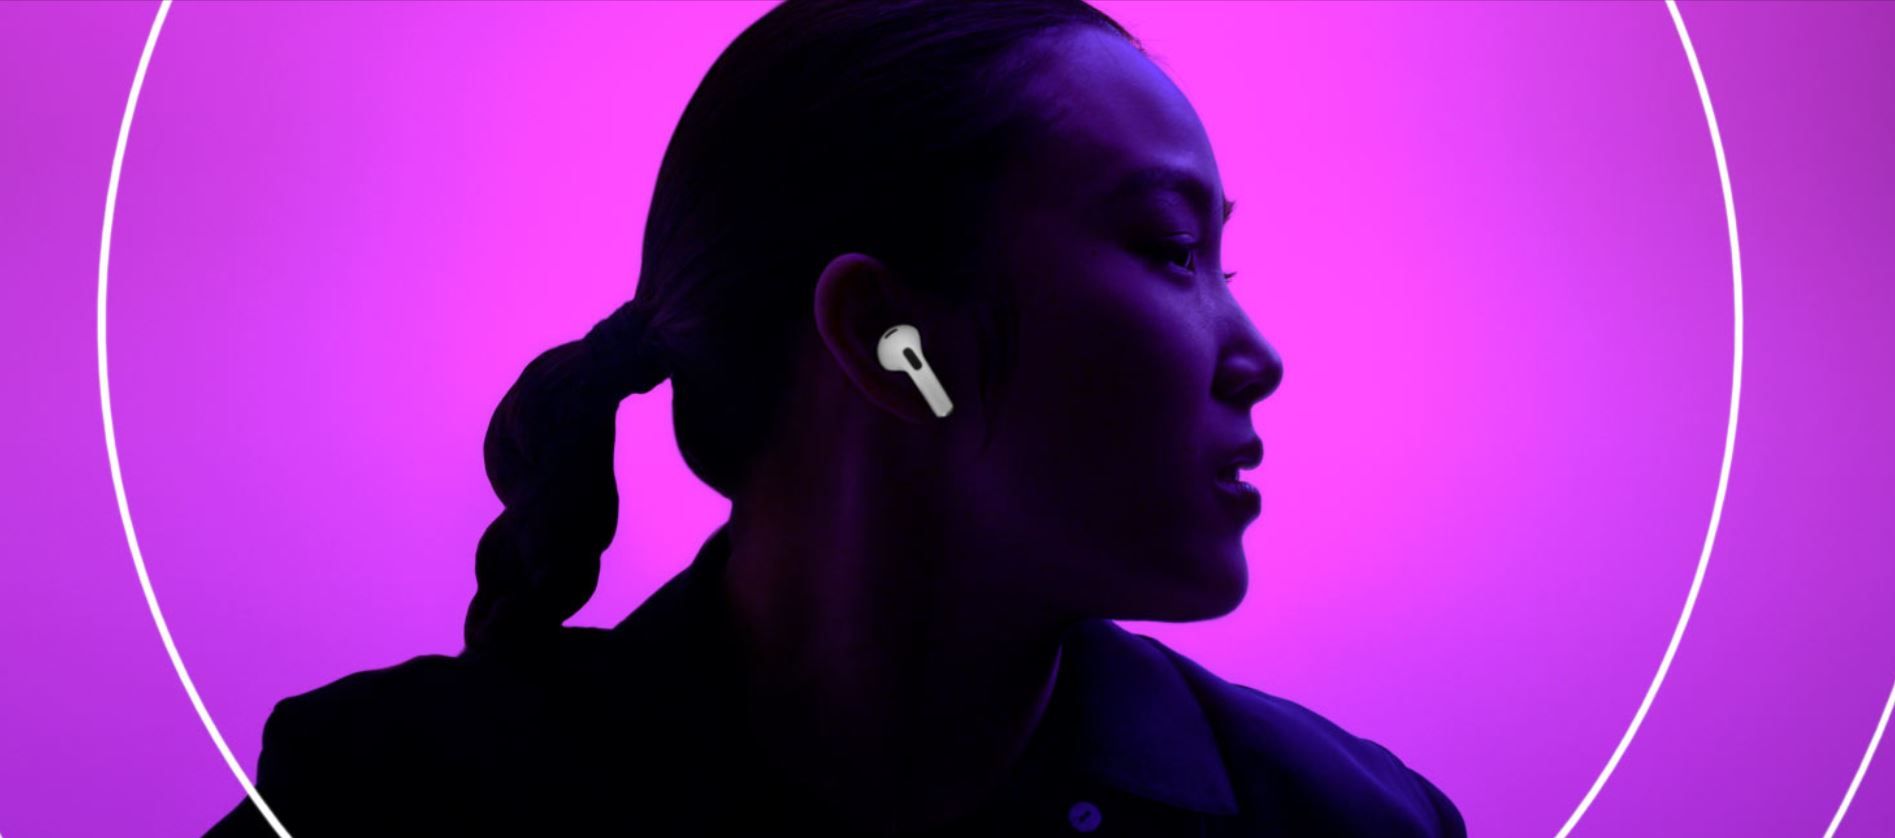  Sodobne slušalke imajo Bluetooth povezavo in se  samodejno seznanjanje z Applovimi napravami upravljanje na dotik odpornost na vodo in znoj čudovit zvok 